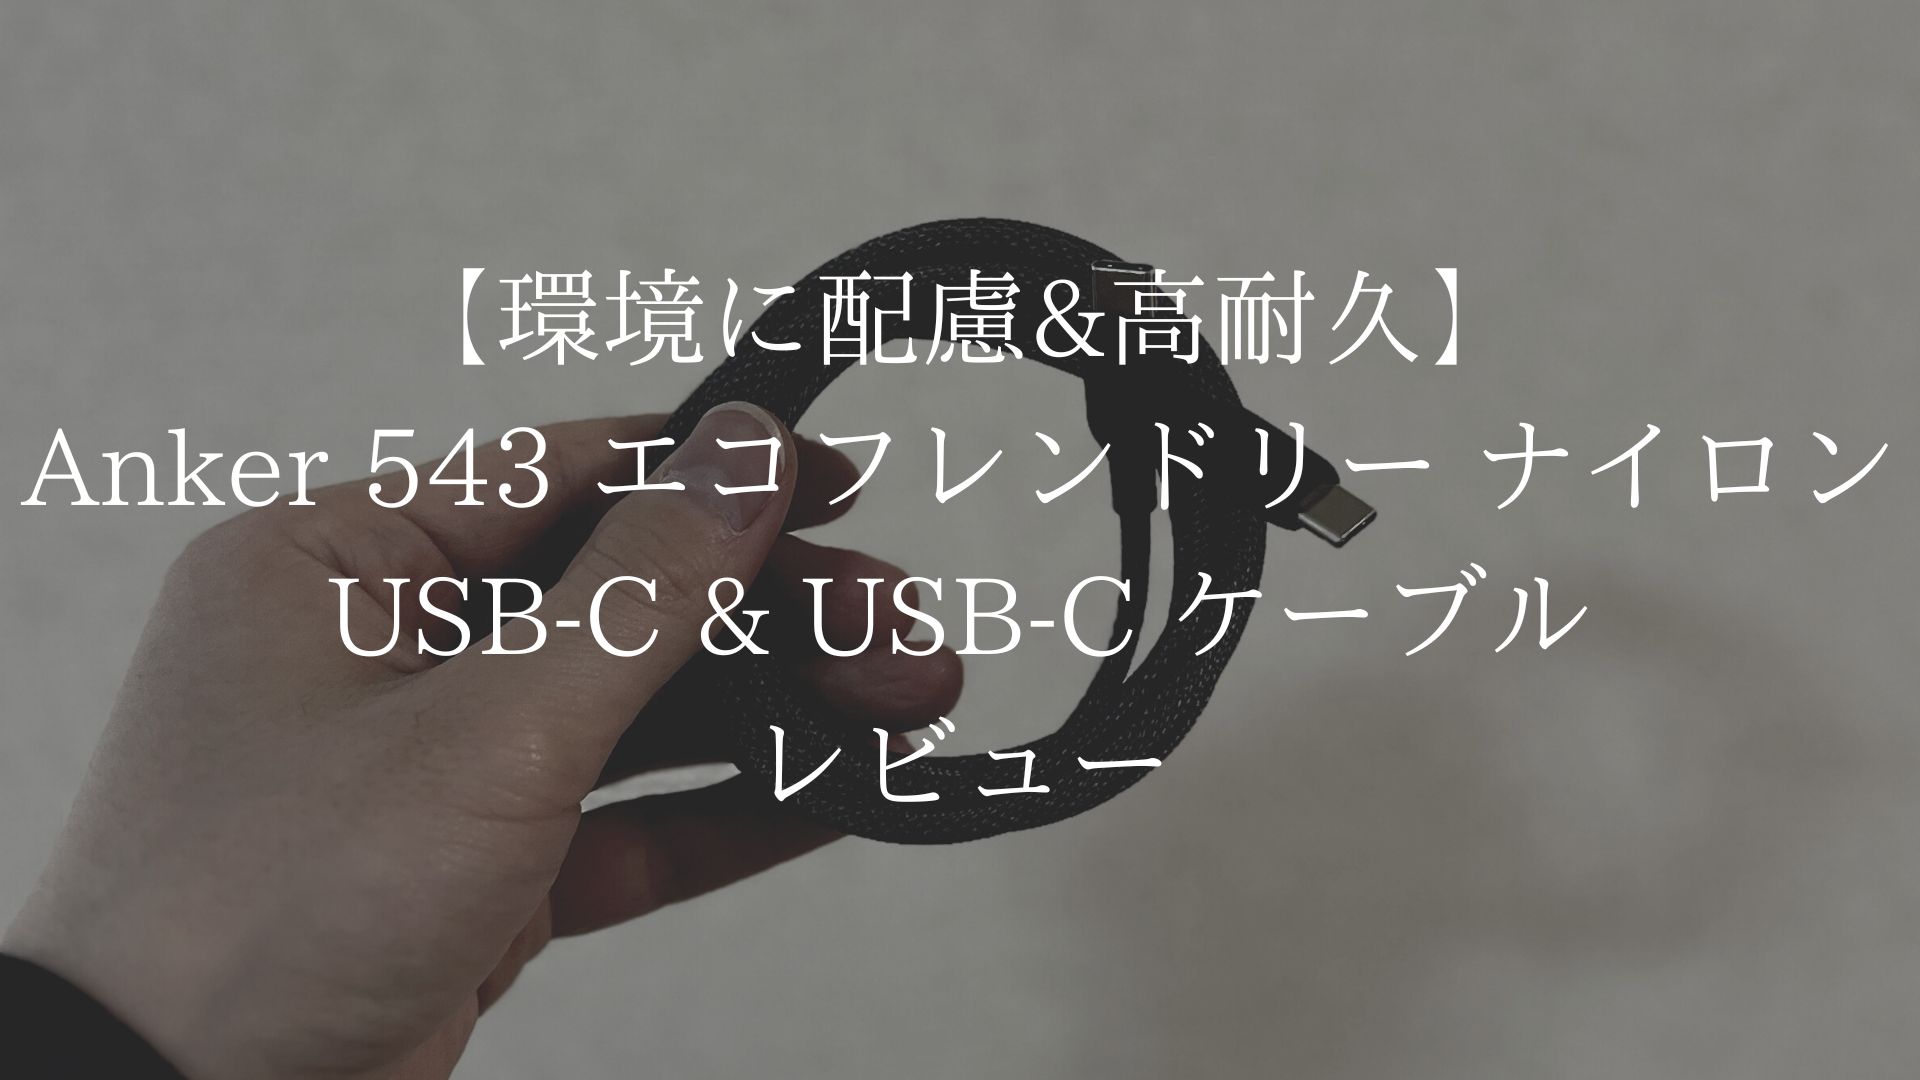 Anker 543 エコフレンドリーナイロン USB-C & USB-C ケーブルのアイキャッチ画像